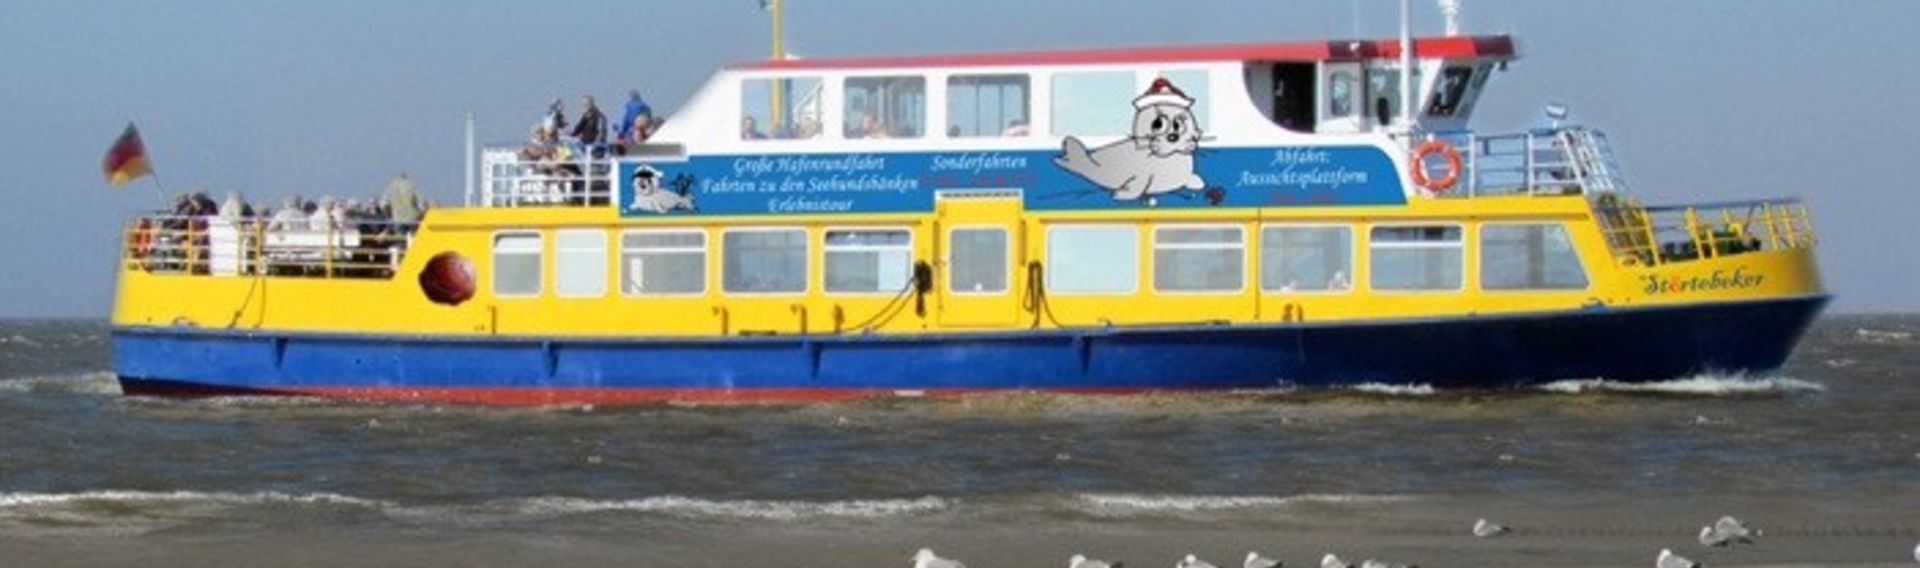 Schifffahrt und Hafenrundfahrt Cuxhaven mit Hund